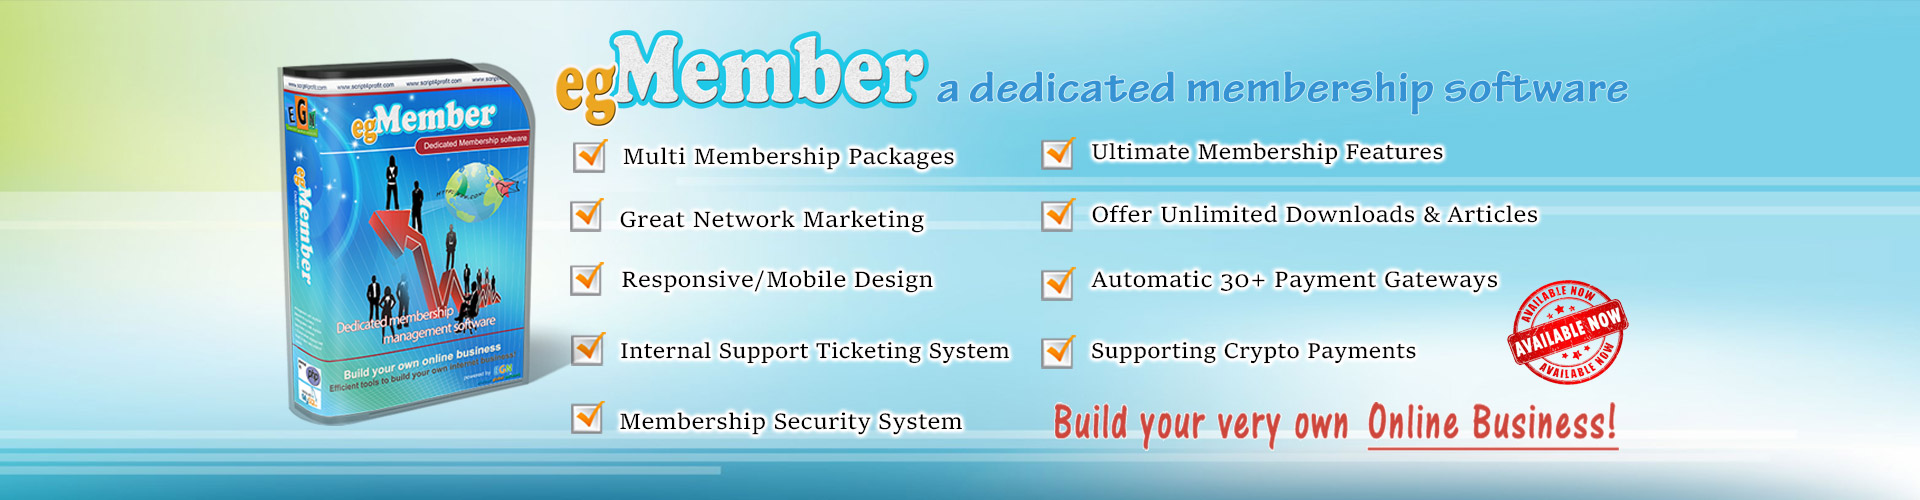 egMember - a dedicated membership software